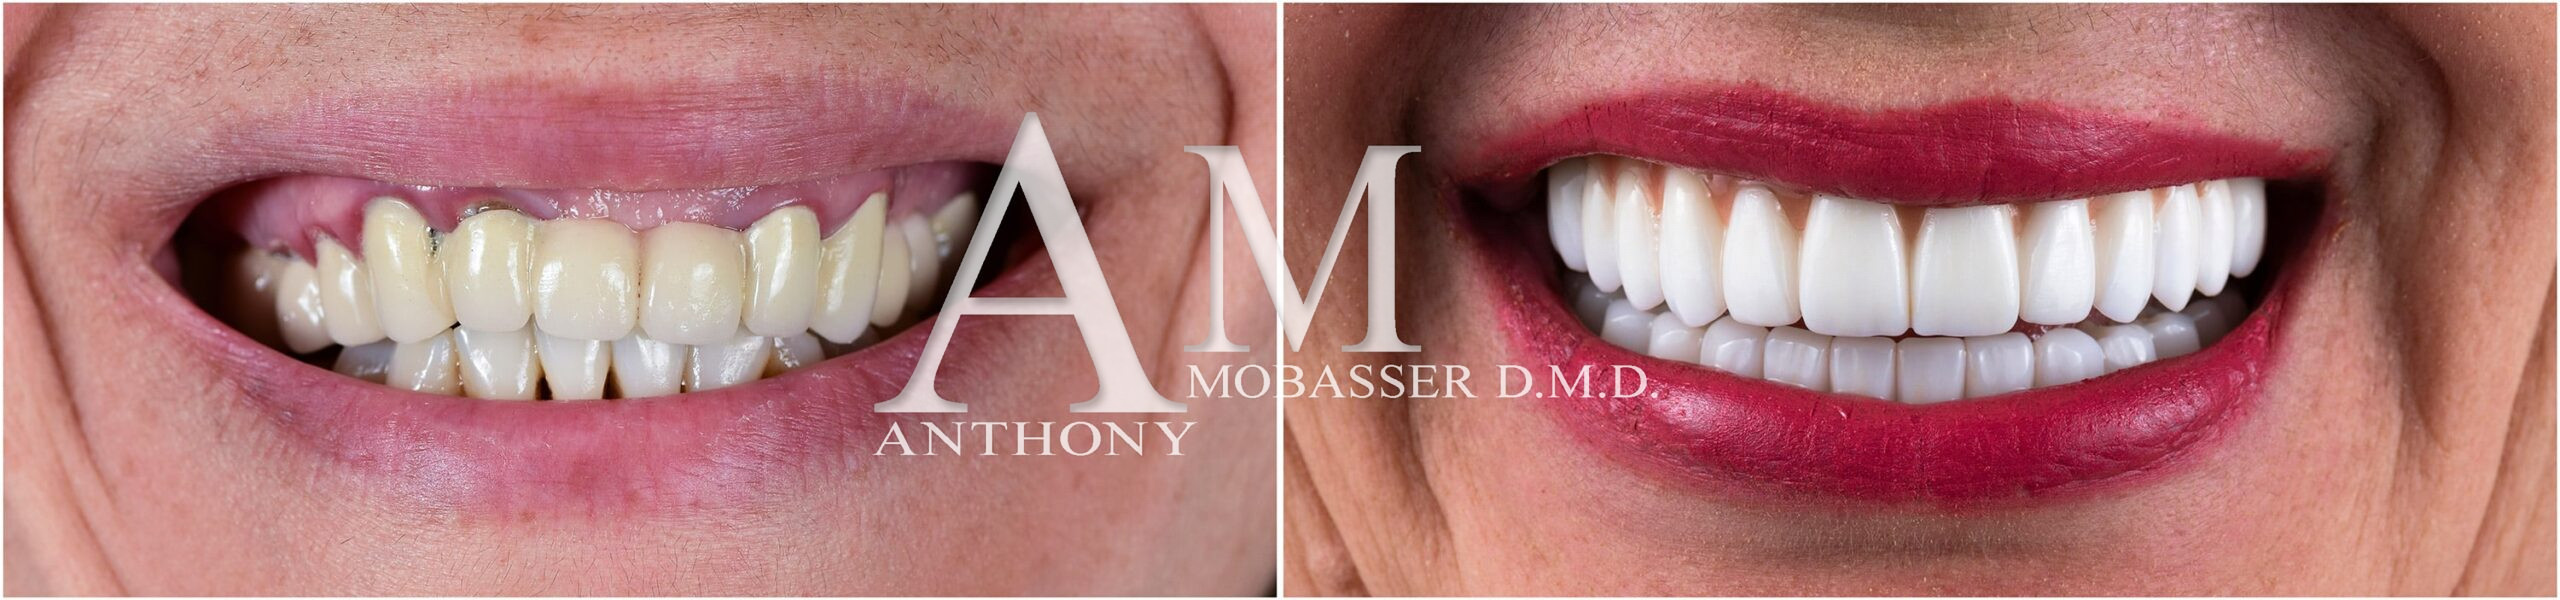 Meilleur dentiste esthétique au monde - Dr. Anthony Mobasser